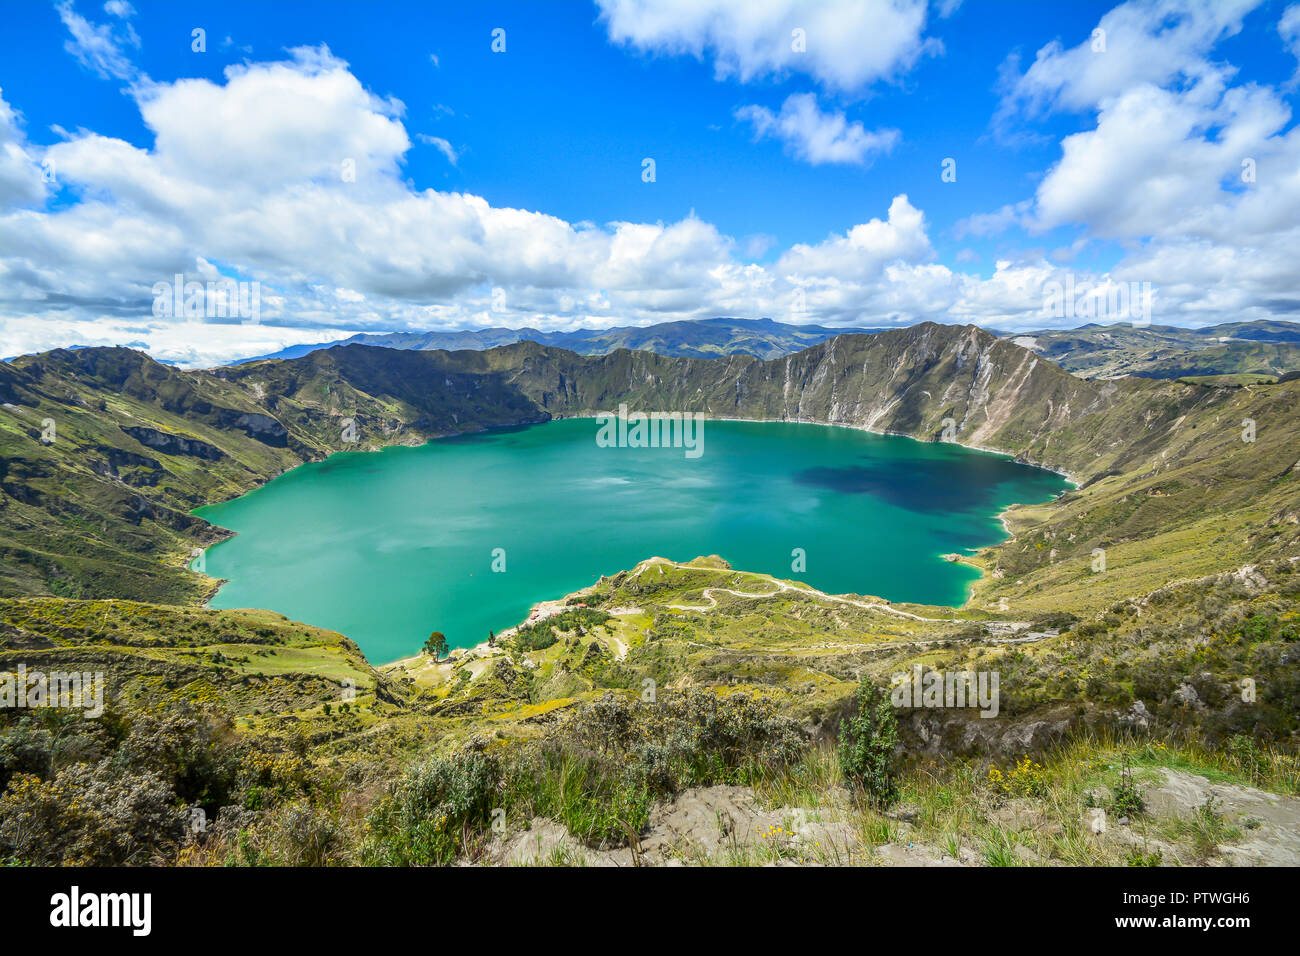 En la laguna del volcán Quilotoa Ecuador con agua de color turquesa. Visitar lugares hermosos en el mundo y les gusta viajar a lugares únicos. Foto de stock